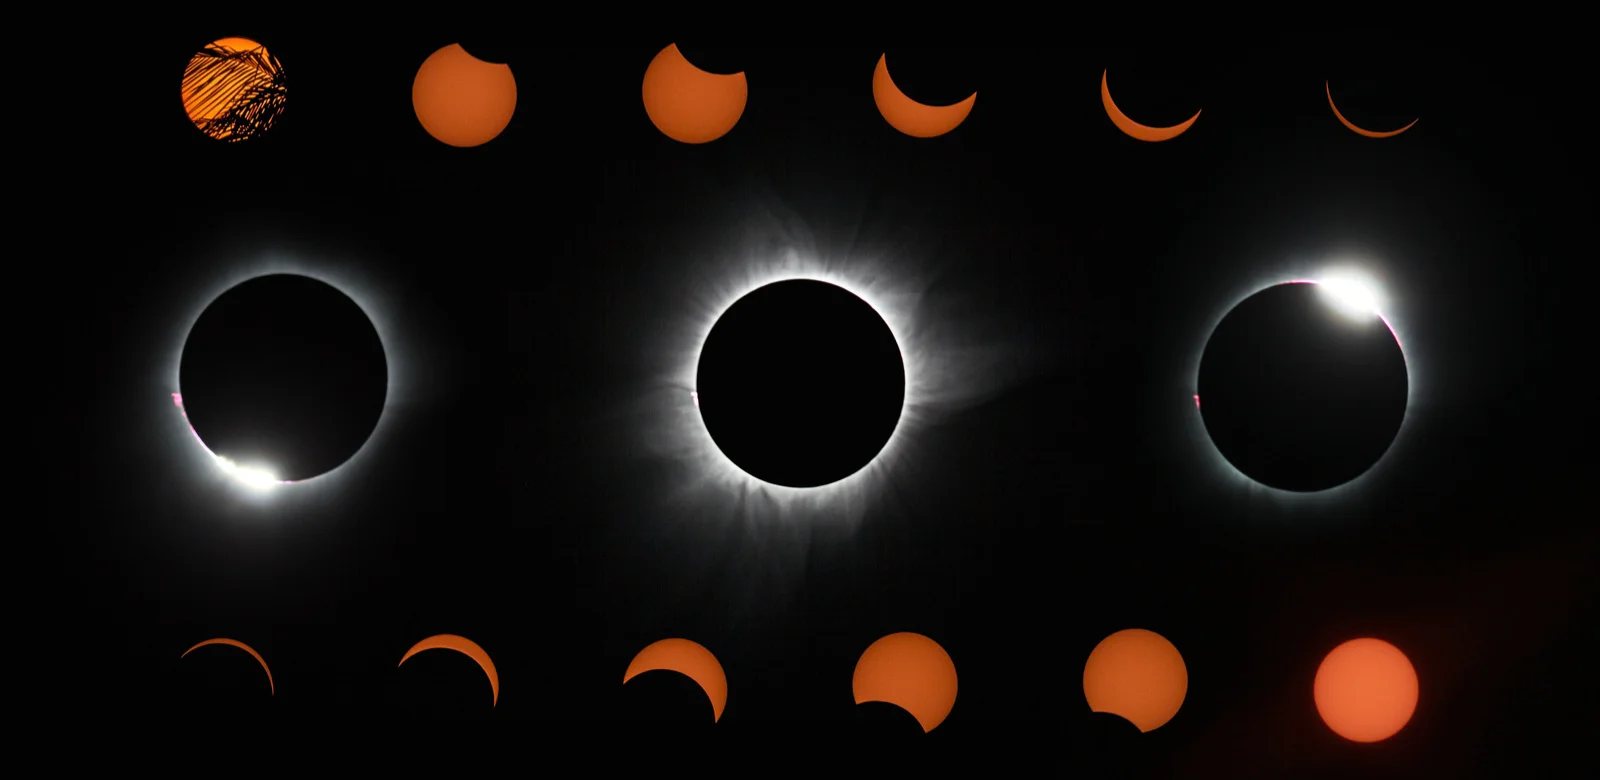  **Gambar 2.** Proses Gerhana Matahari Total 9 Maret 2016 di Poso. Tampak fase gerhana yang dimulai dari sebelum (atas), saat (tengah), hingga setelah (bawah) totalitas. 